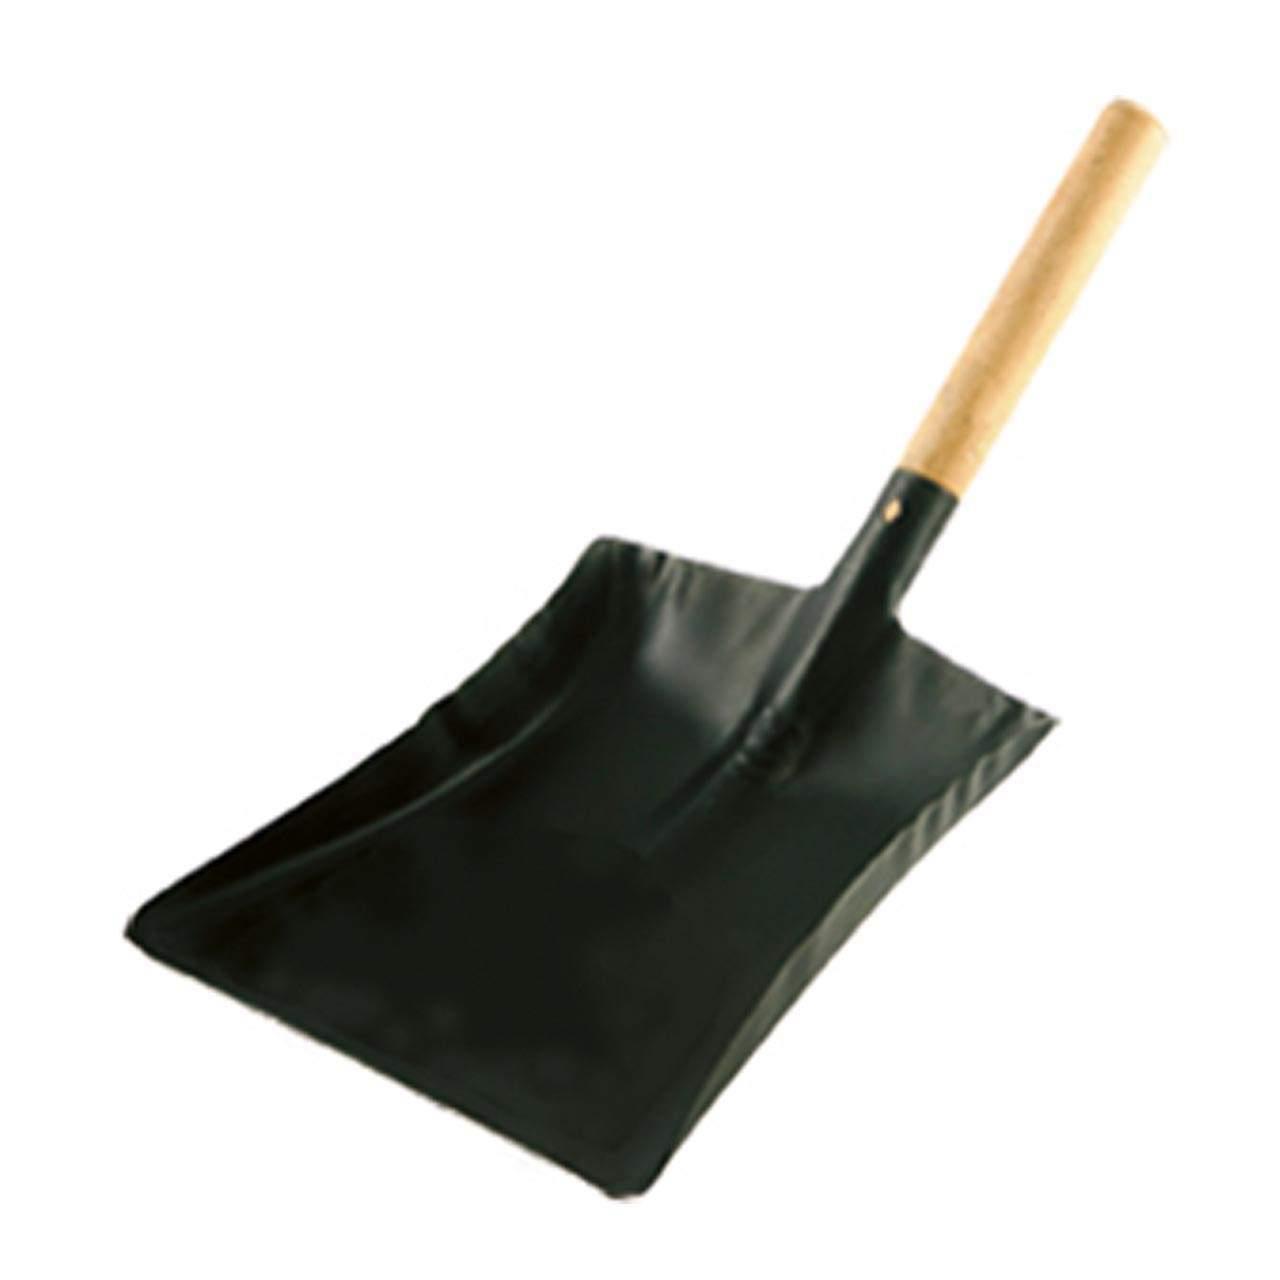 9" Wood Handle Black Coal Shovel - HNHCOAL9 